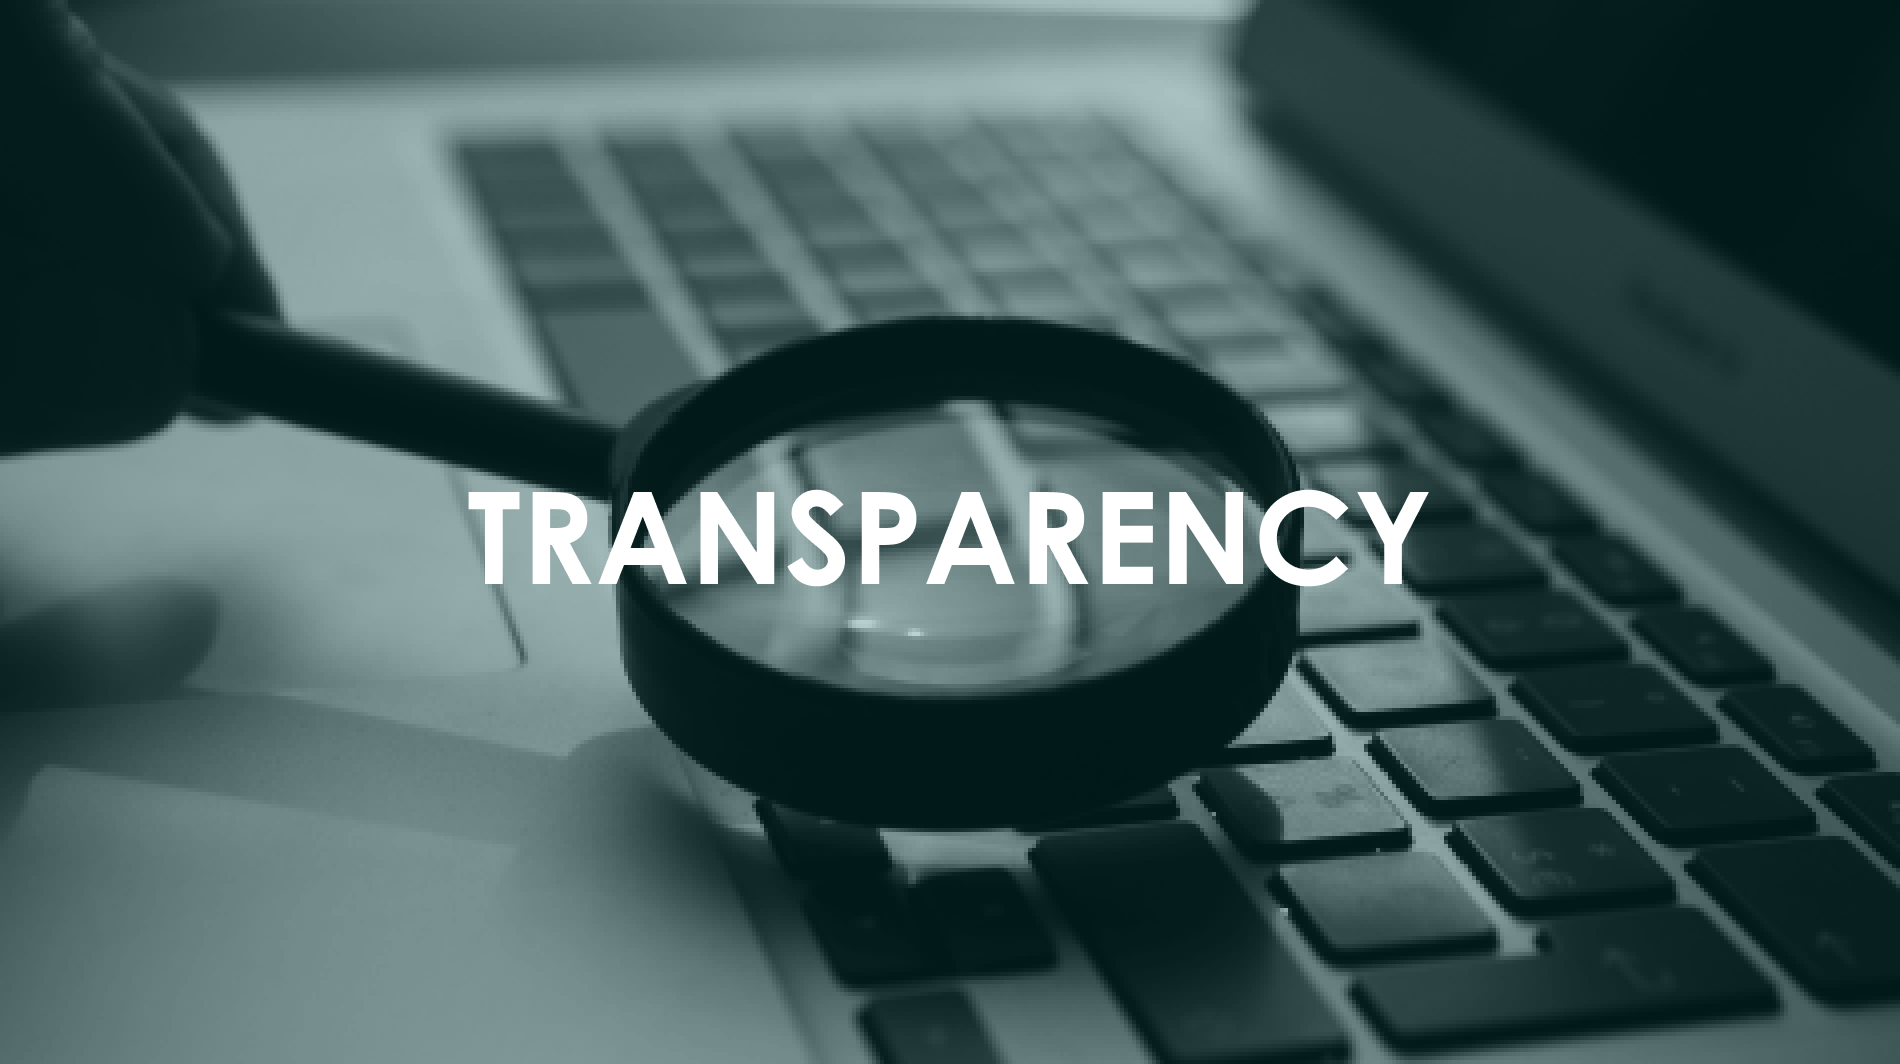 Cabildo transparency